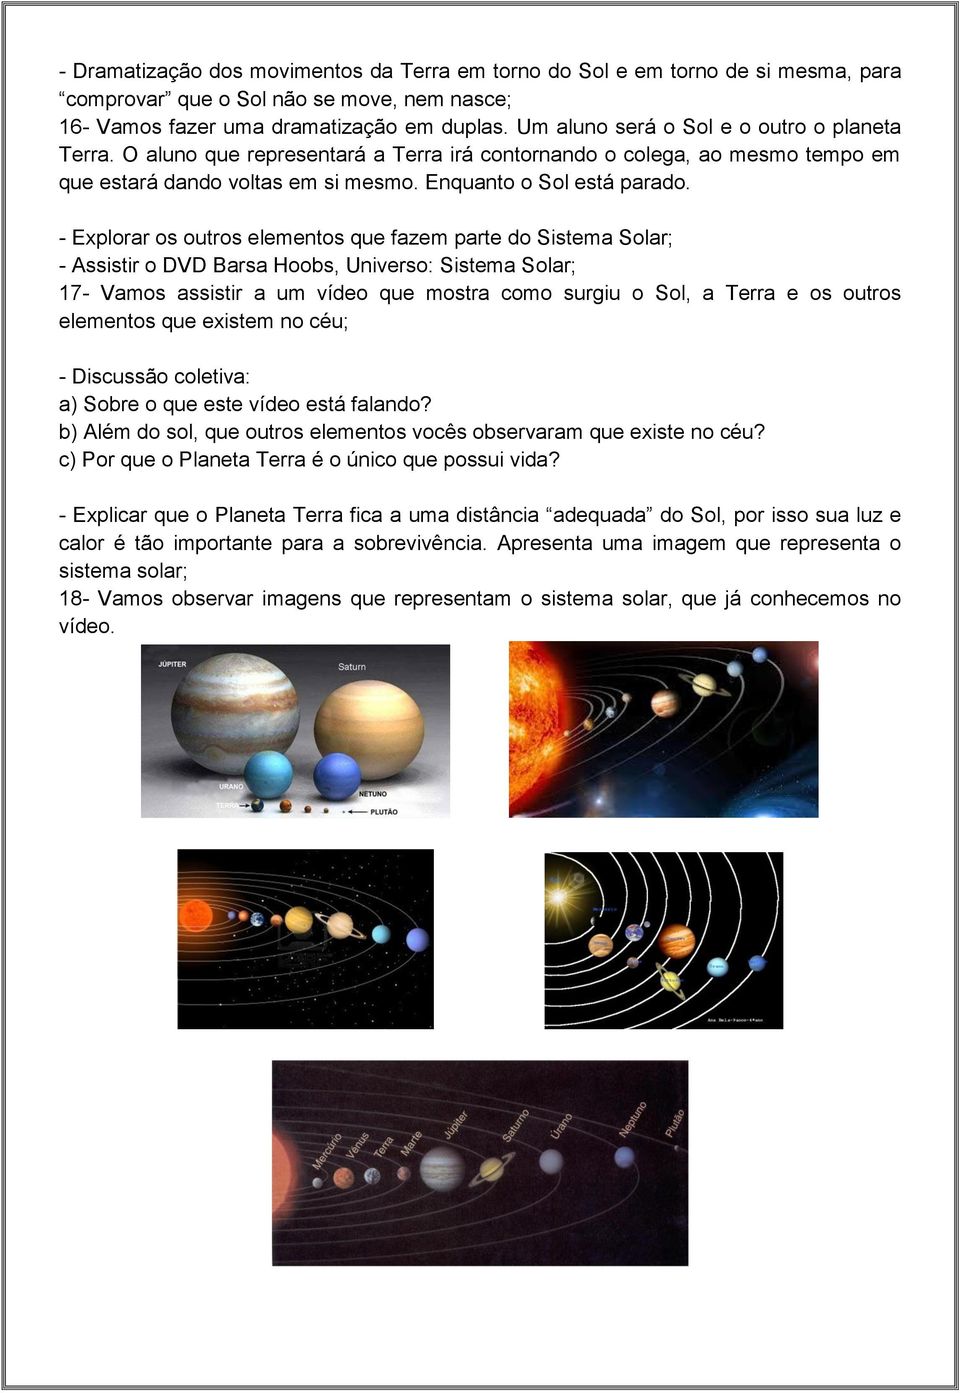 - Explorar os outros elementos que fazem parte do Sistema Solar; - Assistir o DVD Barsa Hoobs, Universo: Sistema Solar; 17- Vamos assistir a um vídeo que mostra como surgiu o Sol, a Terra e os outros